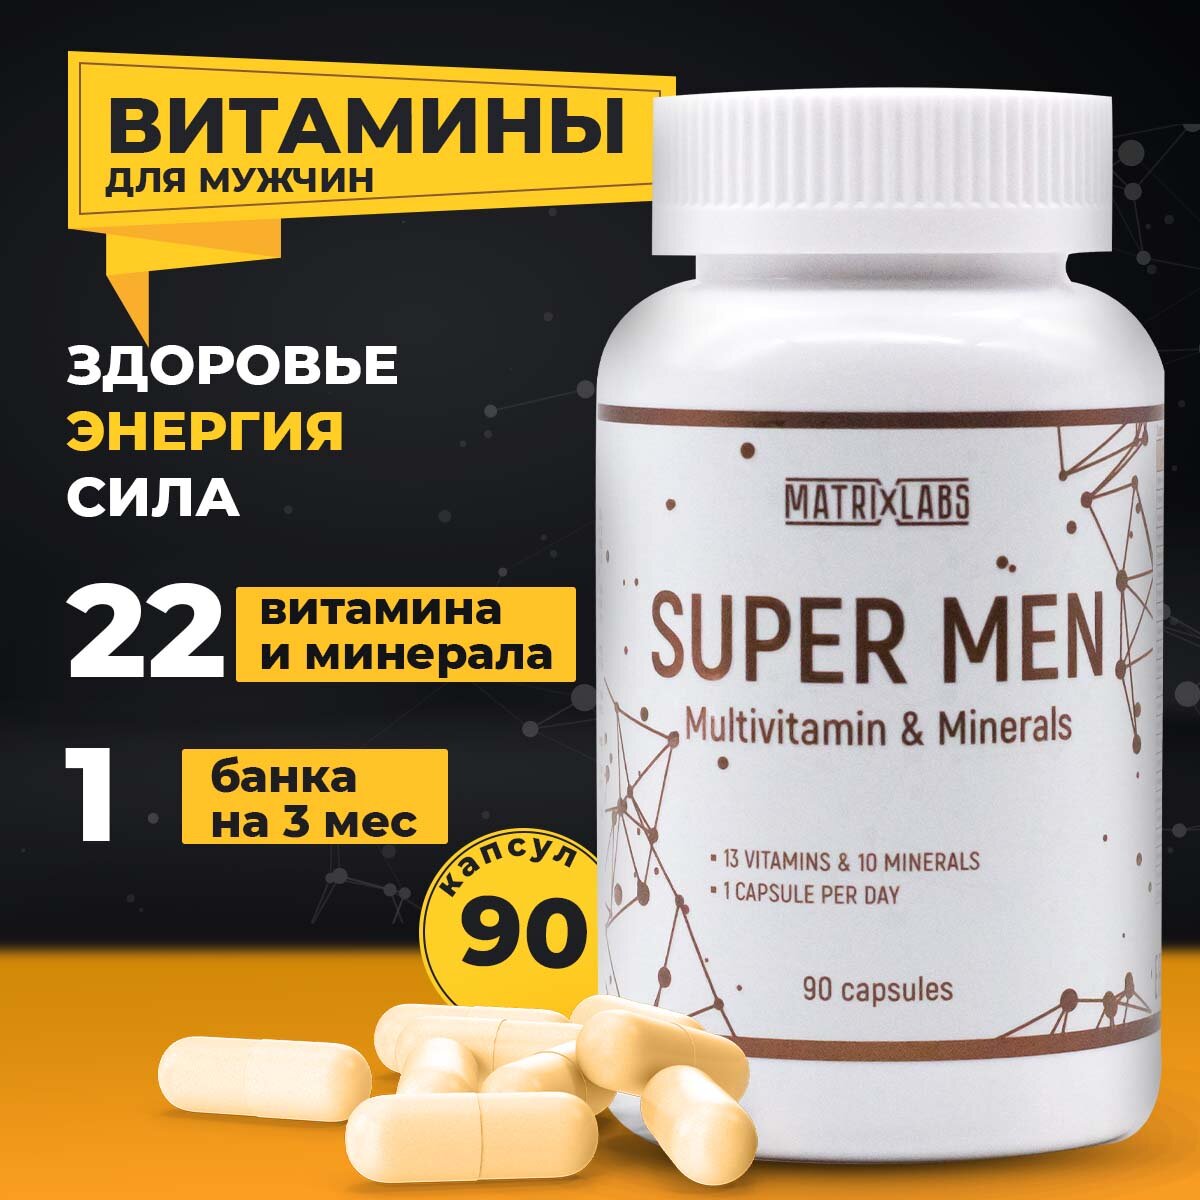 Витамины для мужчин SUPER MEN 90 капс. Matrix Labs, мультивитаминный и минеральный комплекс, улучшение мужского здоровья, повышение либидо и тестостерона у мужчин